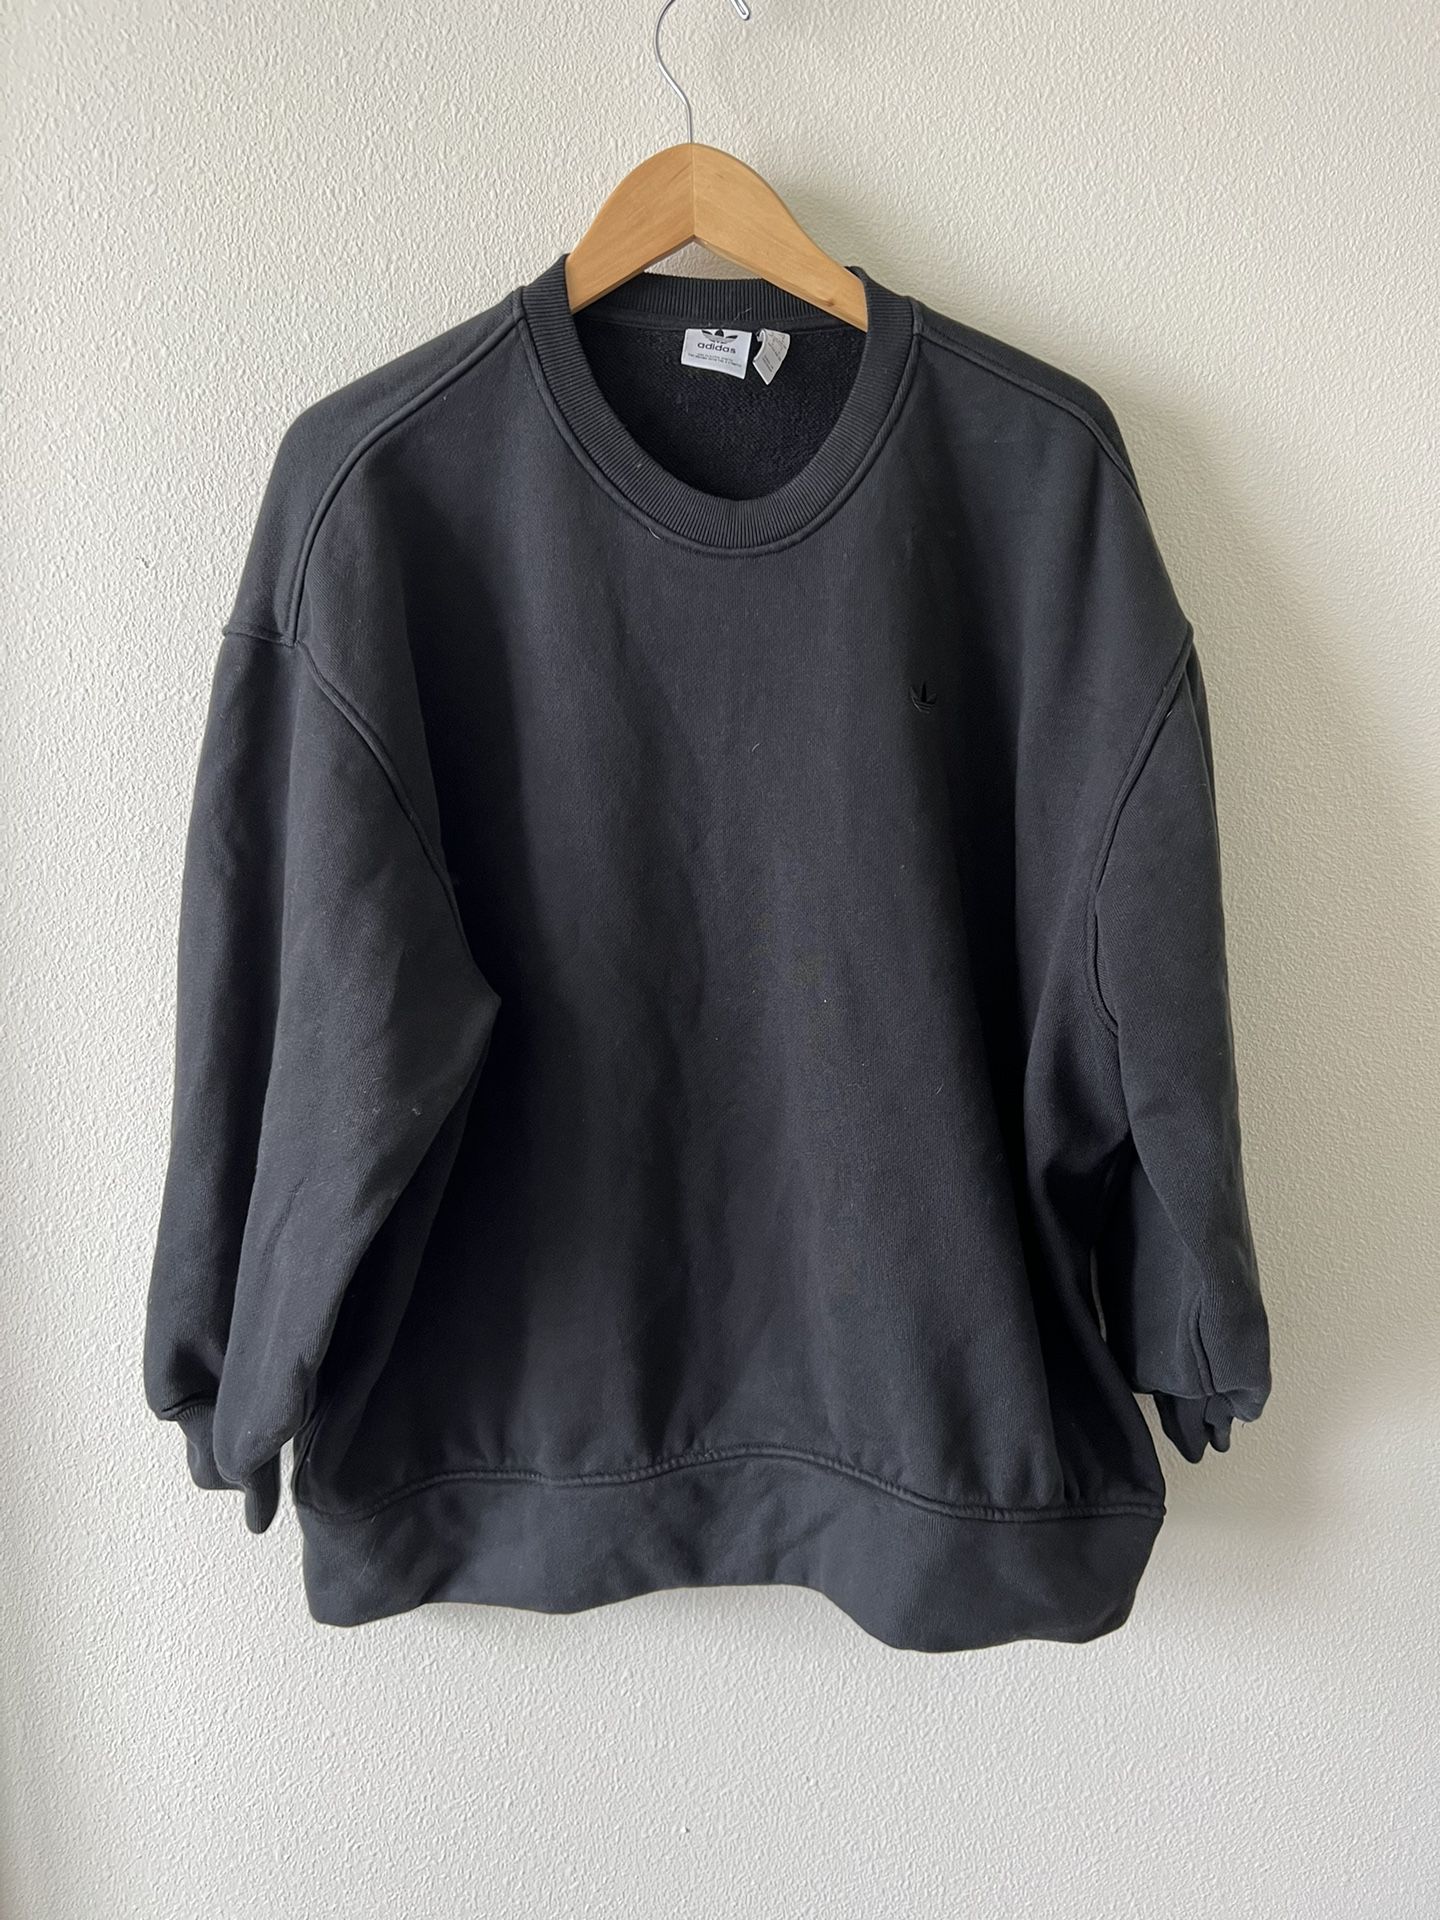 Adidas Black Sweater Size Large